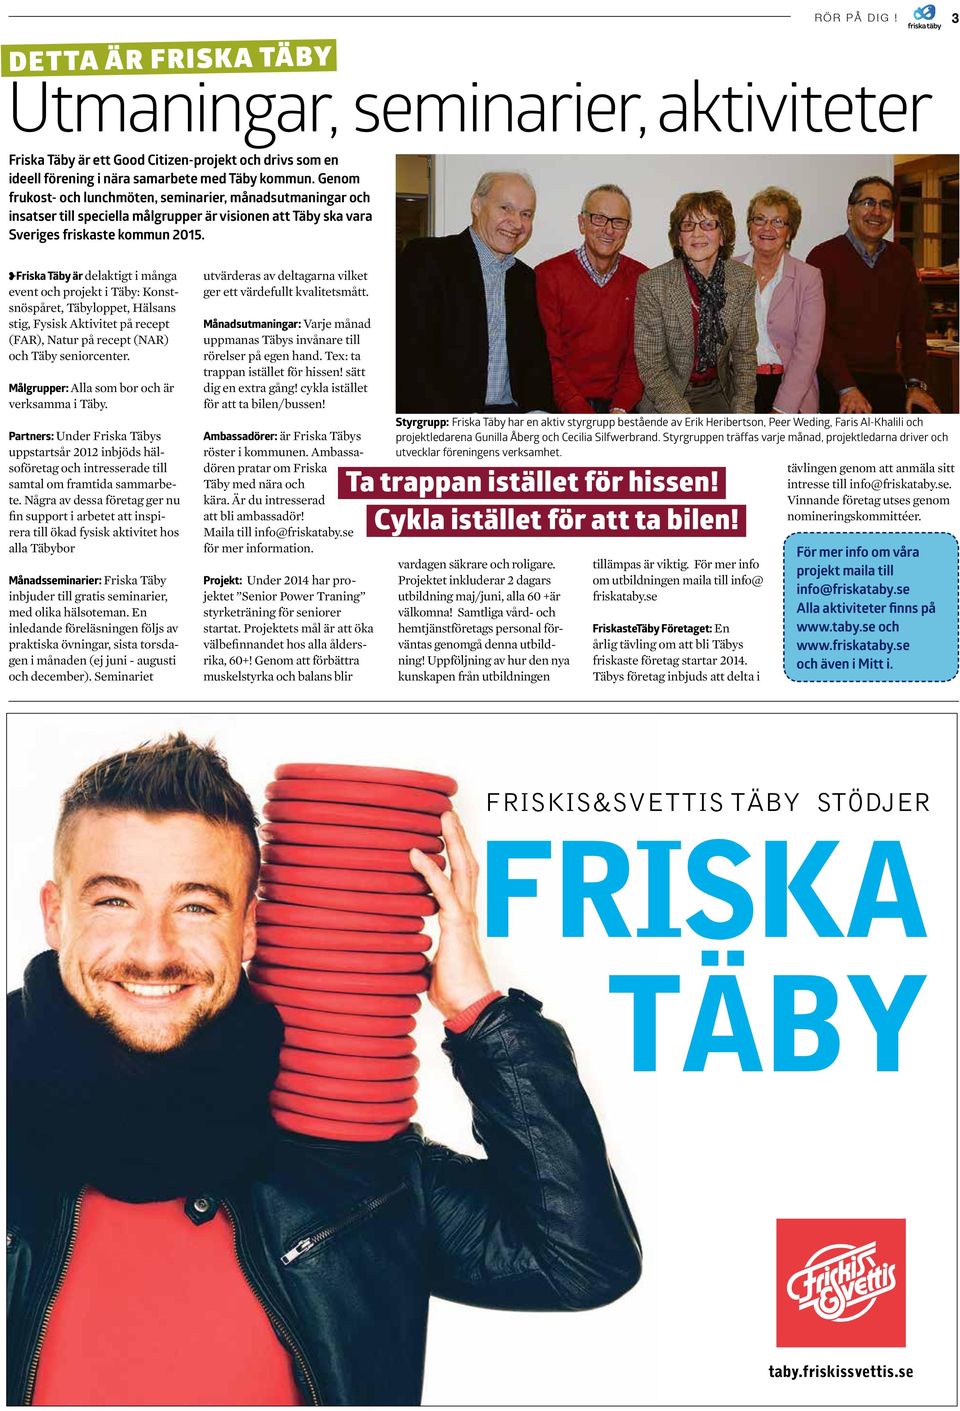 Friska Täby är delaktigt i många event och projekt i Täby: Konstsnöspåret, Täbyloppet, Hälsans stig, Fysisk Aktivitet på recept (FAR), Natur på recept (NAR) och Täby seniorcenter.